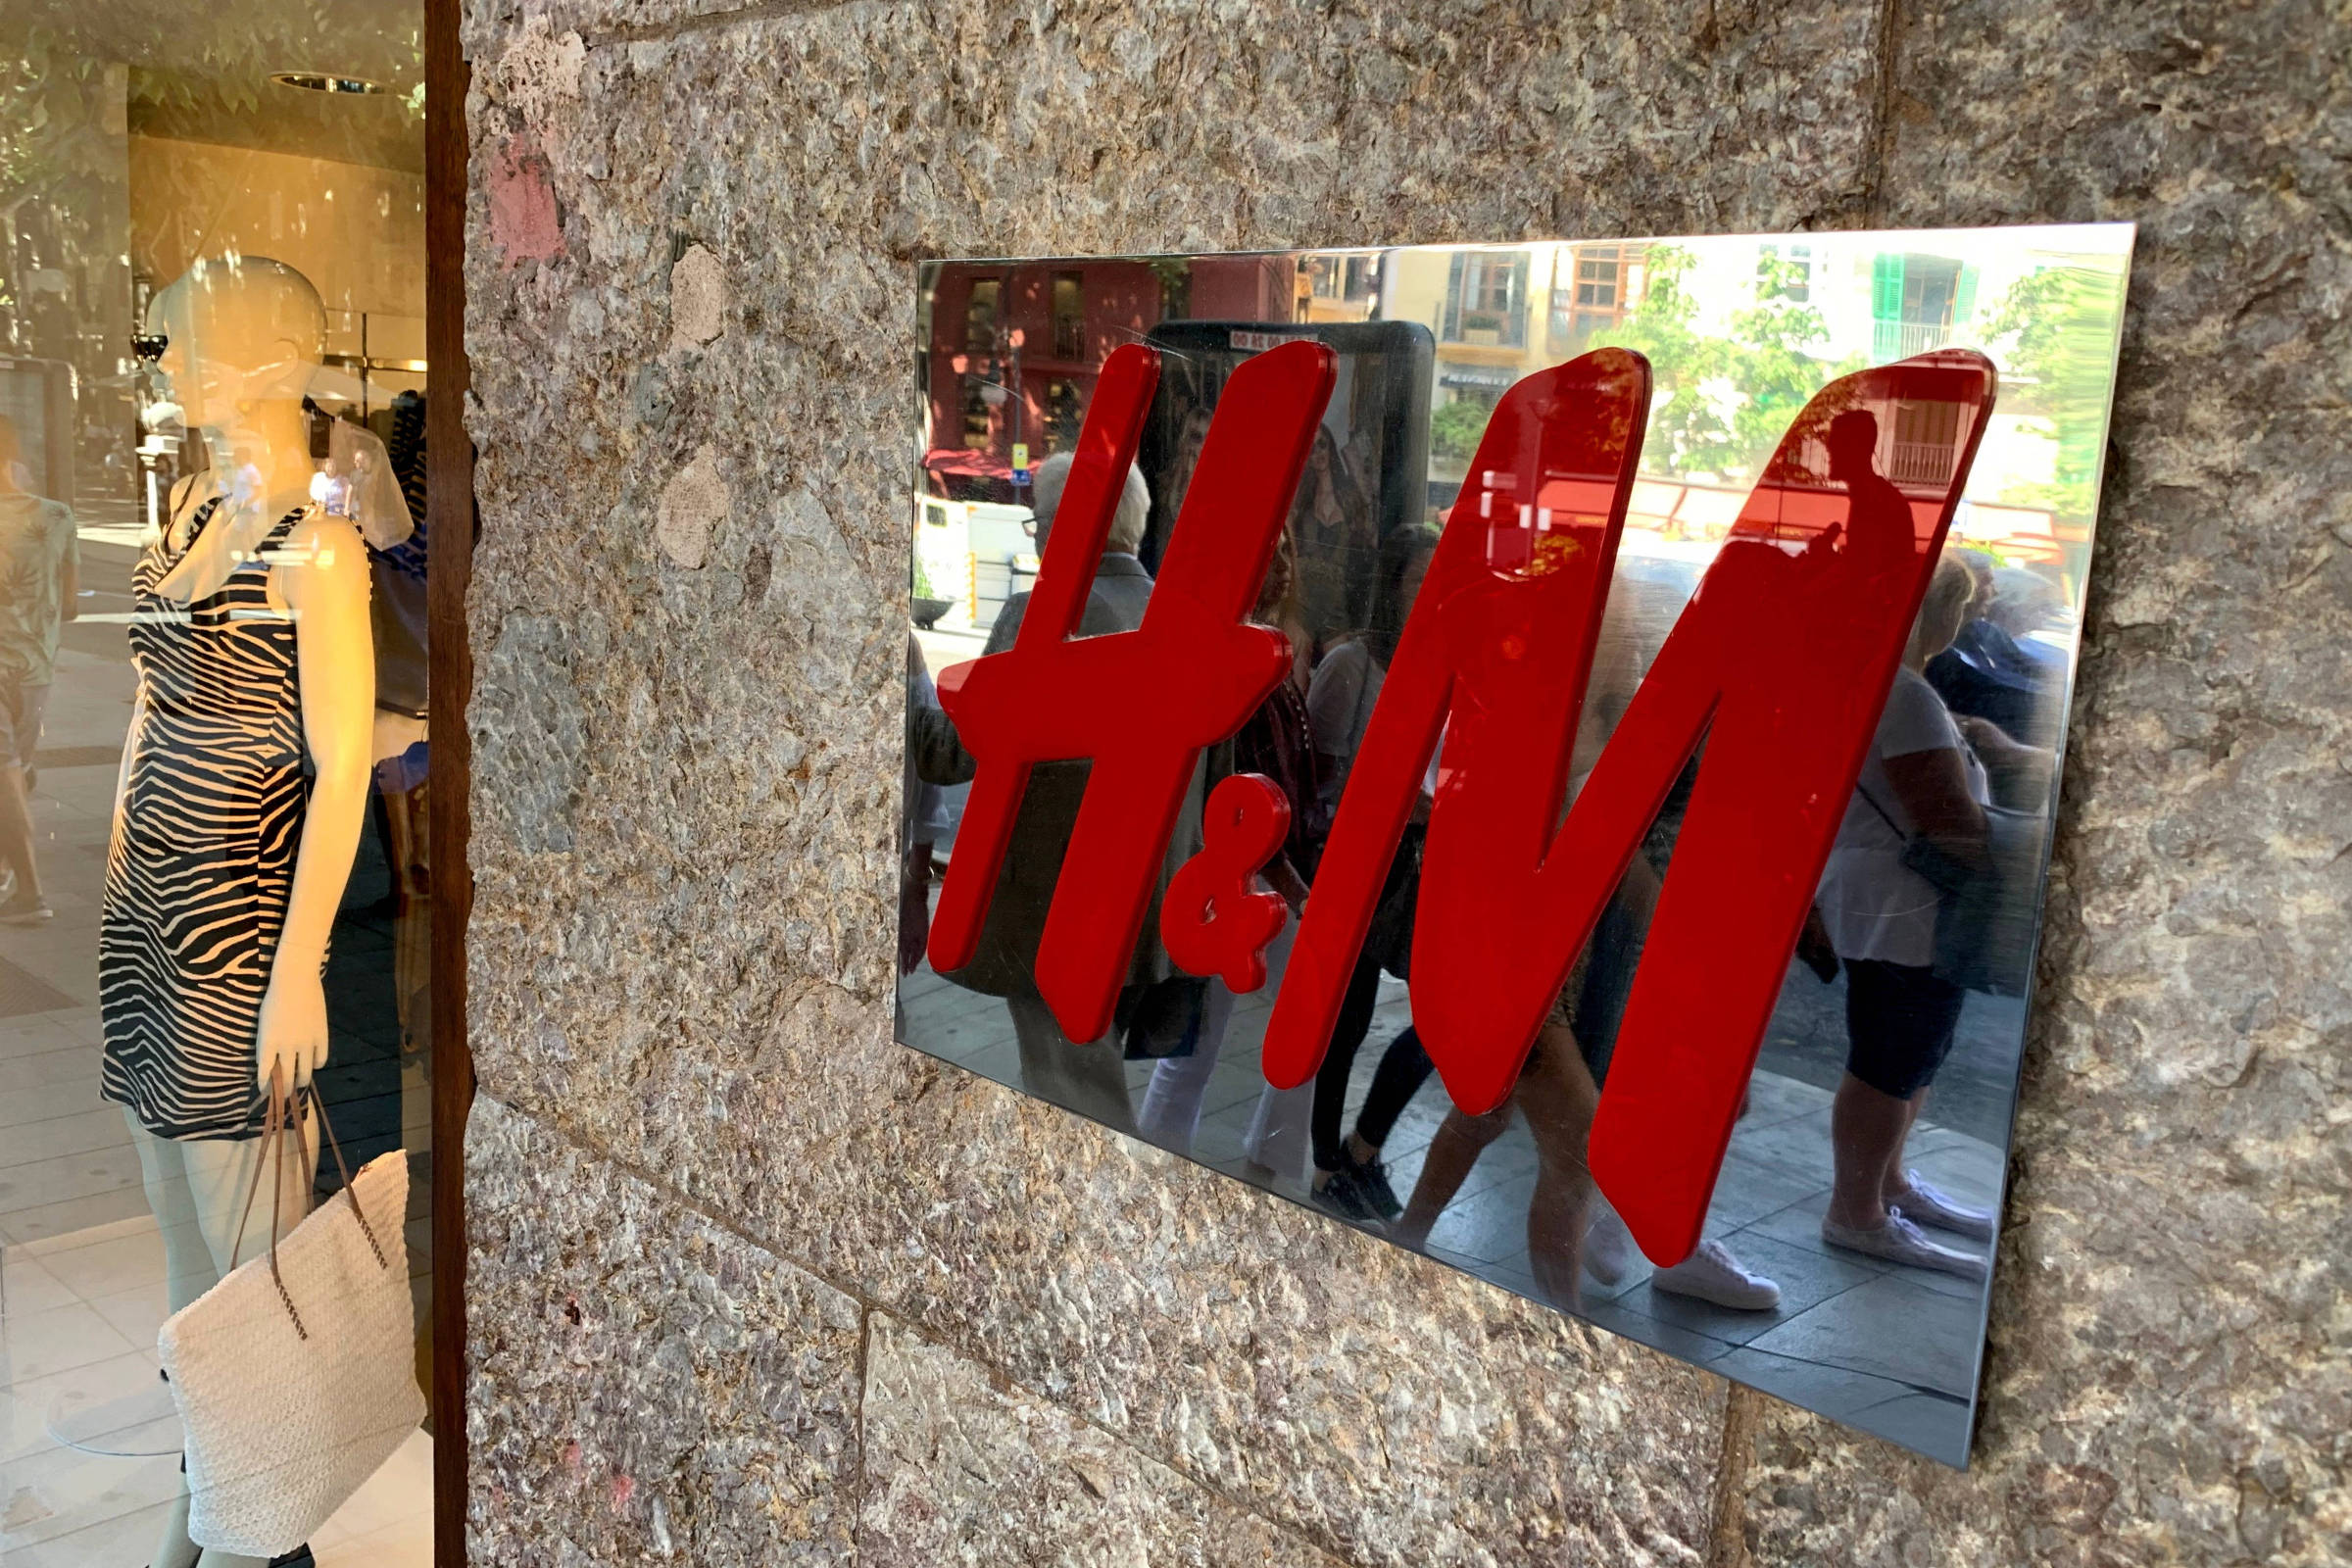 H&M anuncia planos para abrir lojas no Brasil em 2025